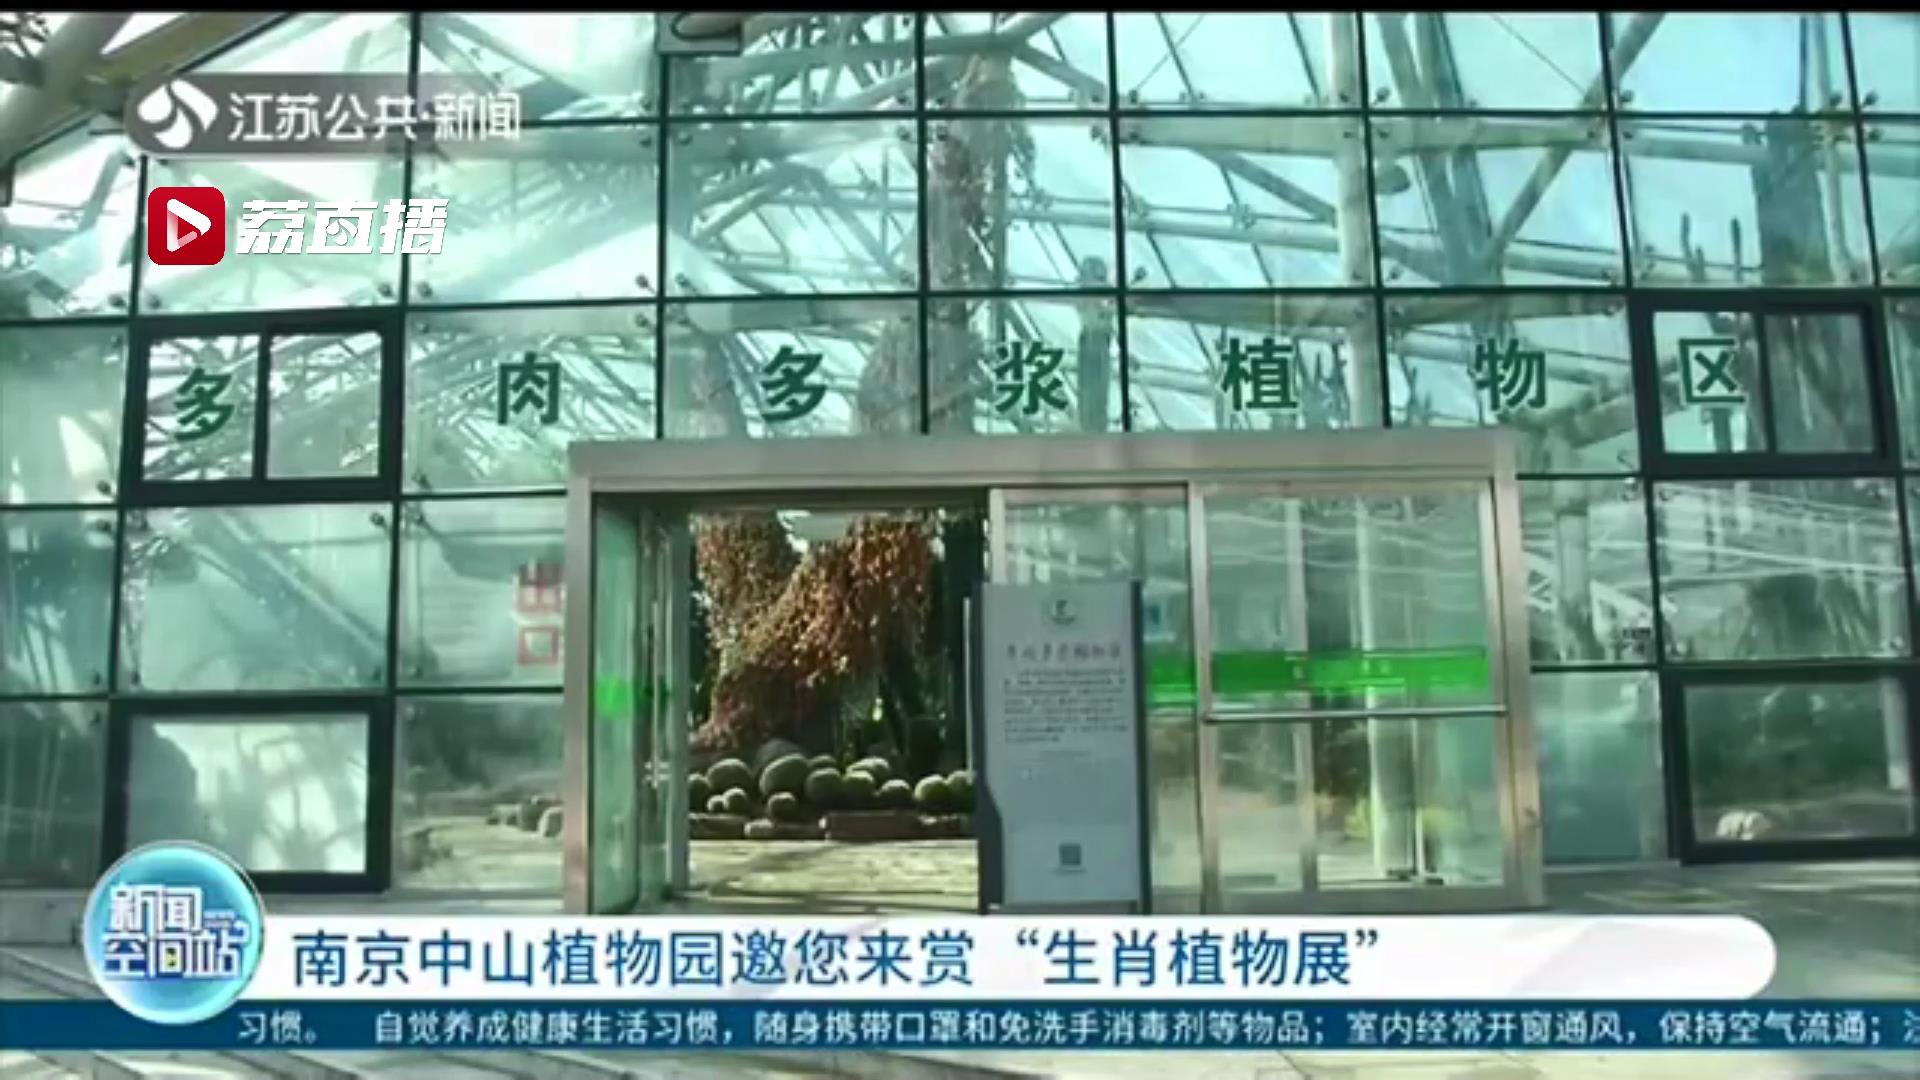 今年大不同 十二生肖植物一起登场！南京中山植物园邀您来赏“生肖植物展”